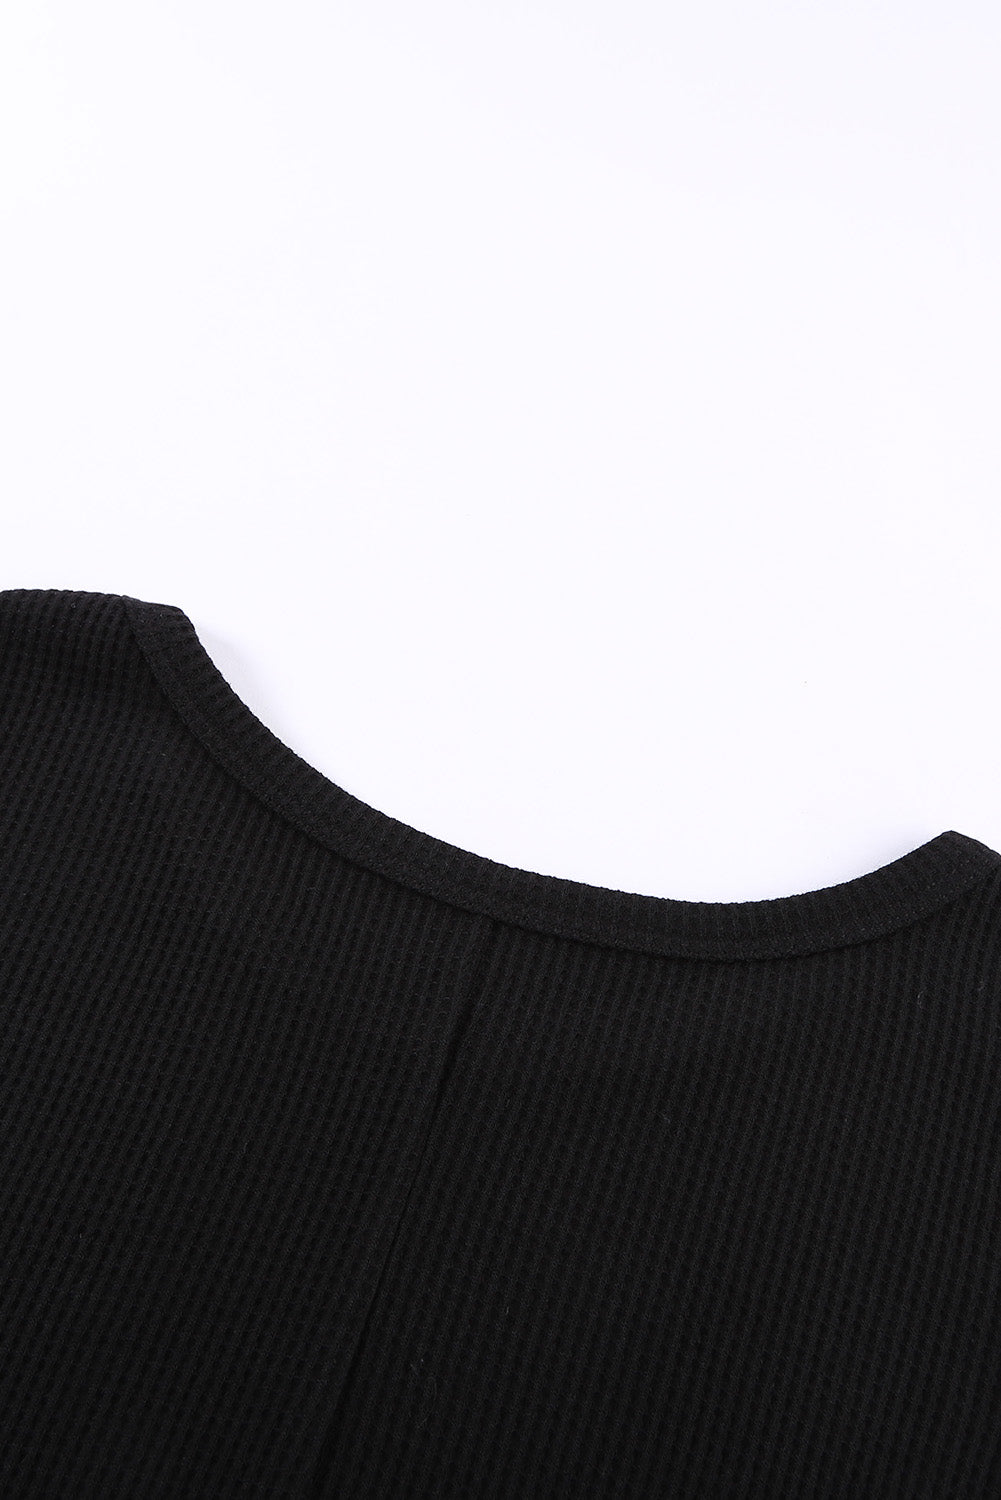 Crna majica bez rukava s okruglim izrezom